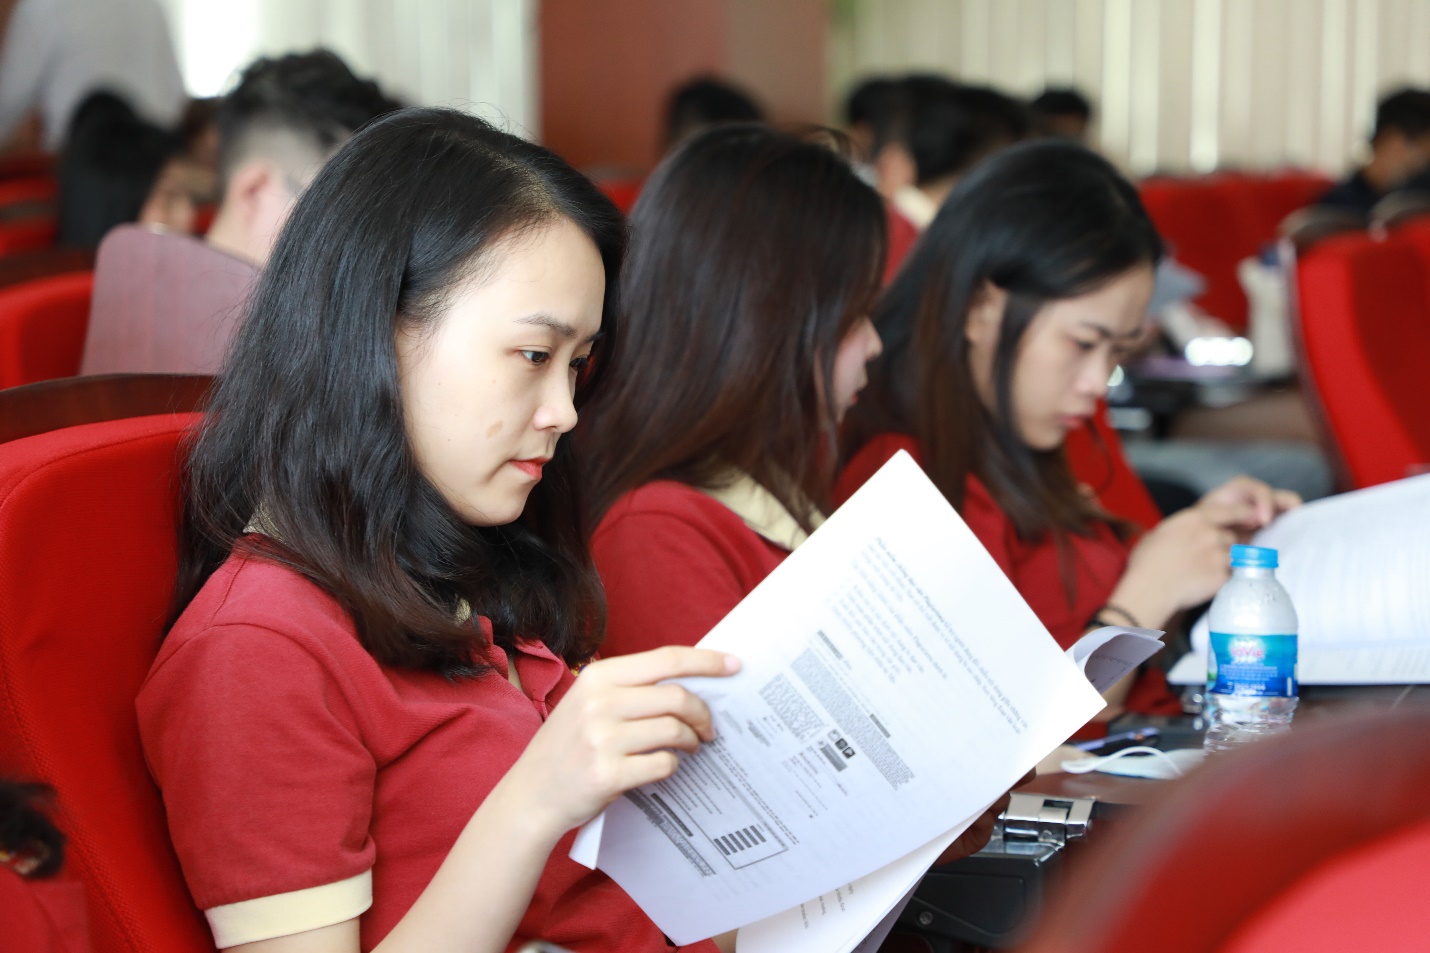 SIU tổ chức sinh hoạt công dân đầu năm cho sinh viên